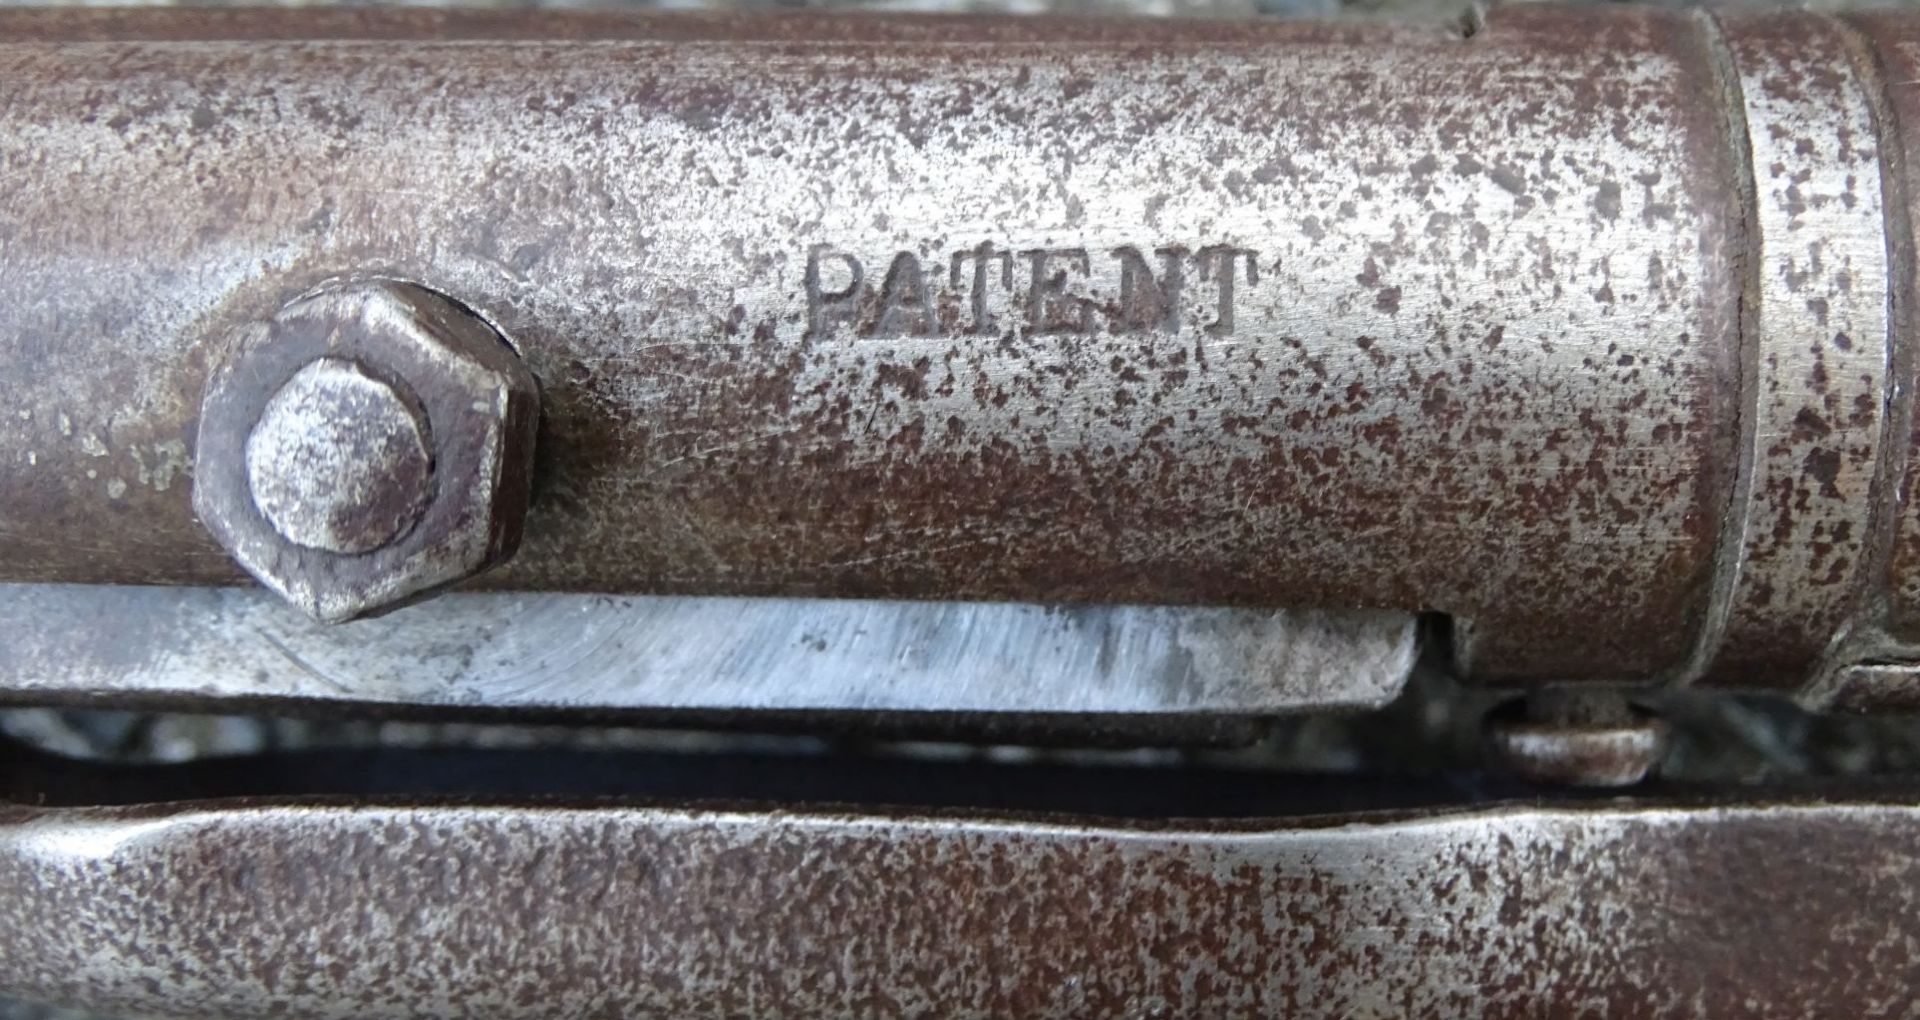 altes Luftdruckgewehr "Diana", Alters-u. Gebrauchsspuren, L-87 cm,- - -22.61 % buyer's premium on - Bild 6 aus 10